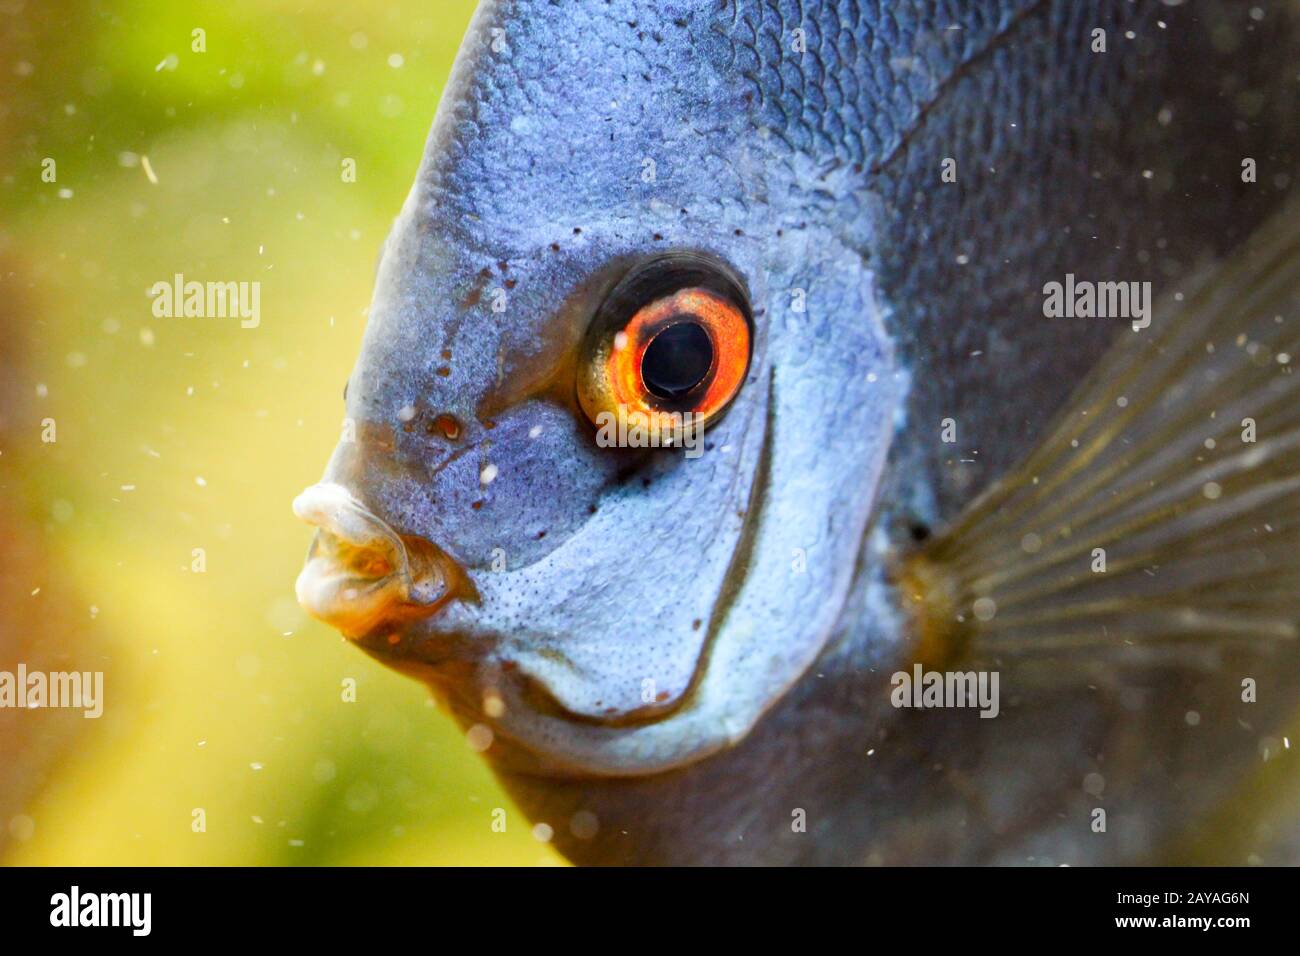 Colorful discus fish in the aquarium Stock Photo